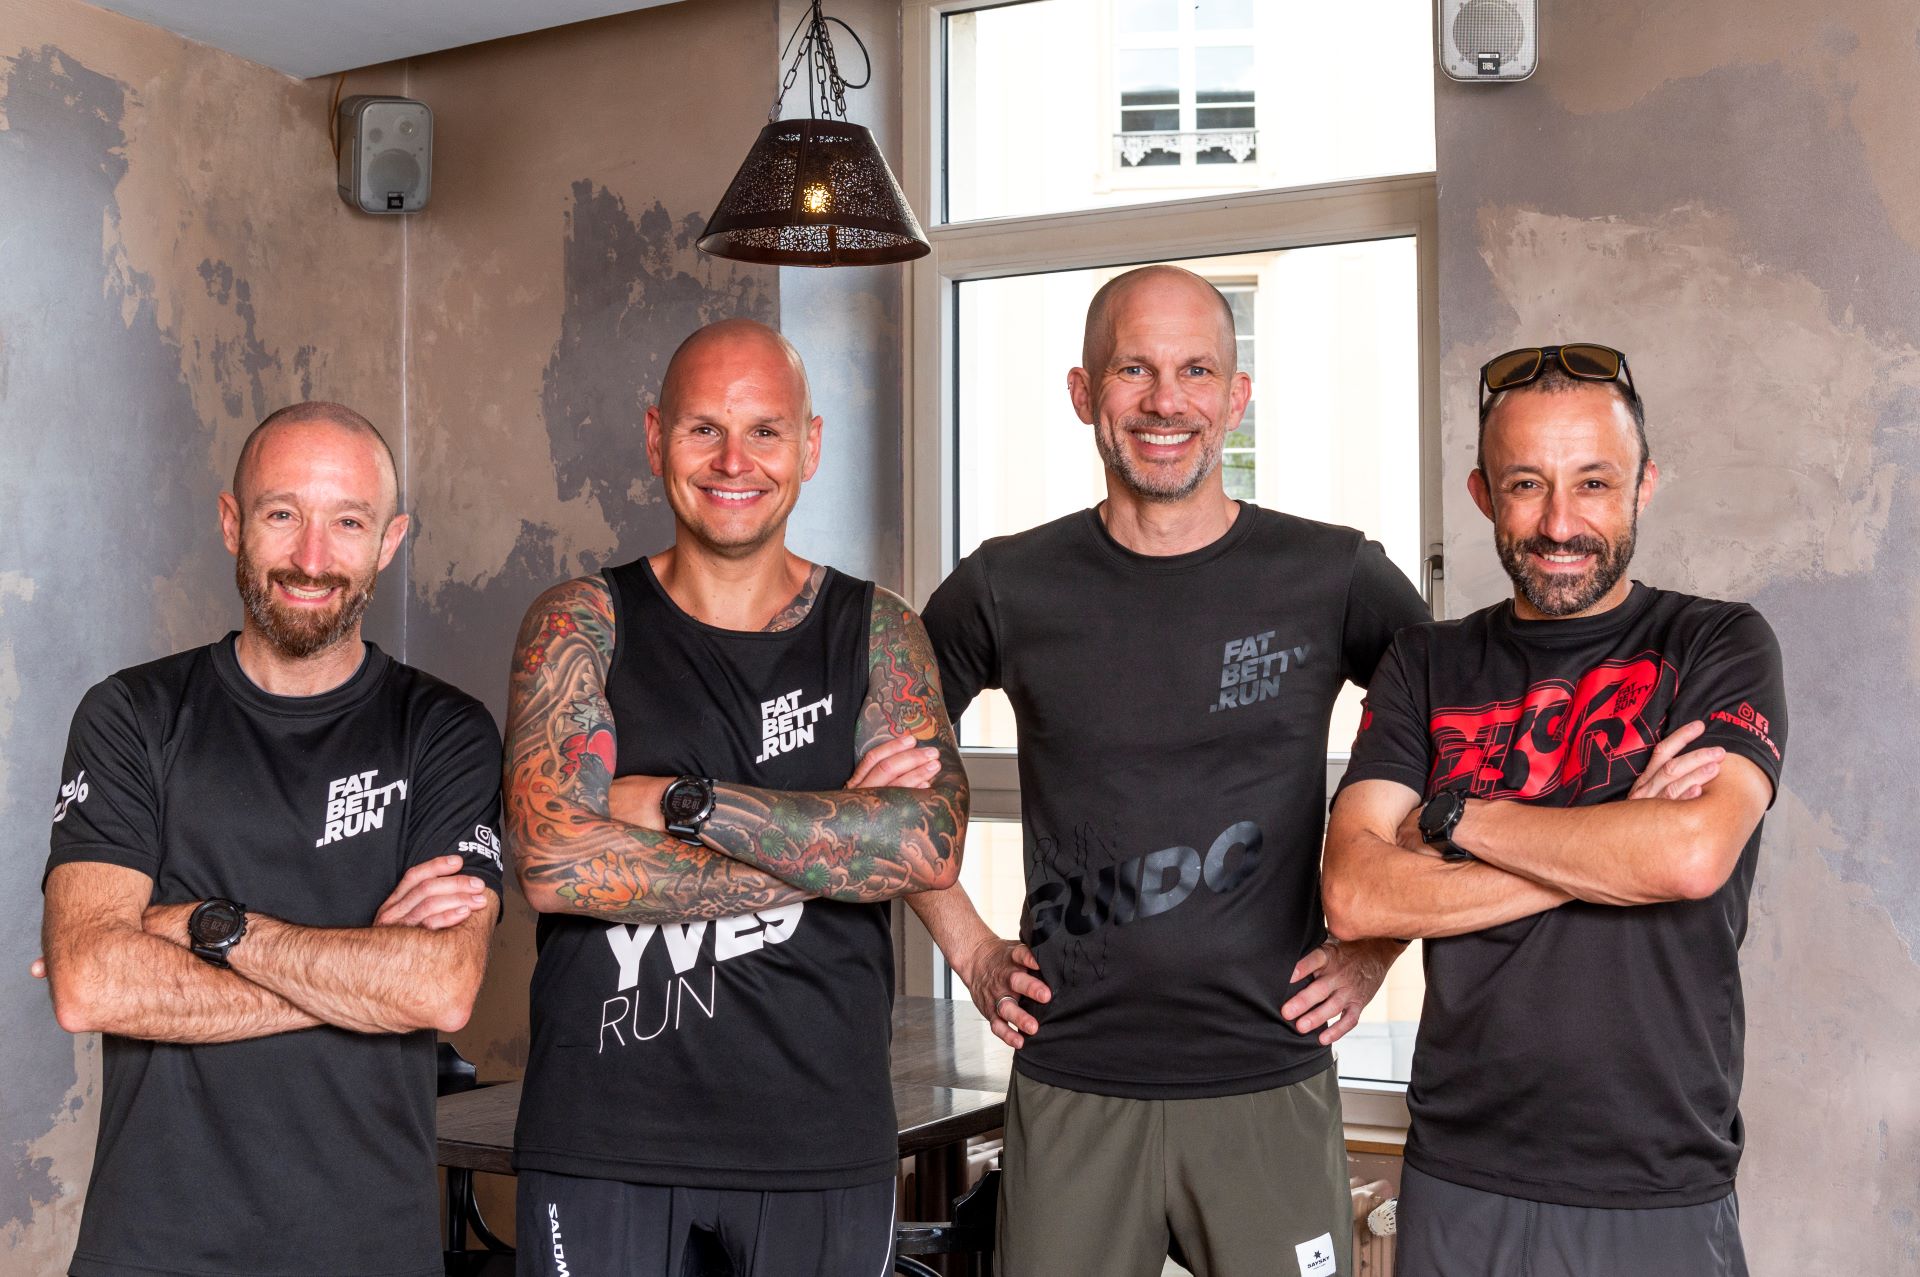 Die vier männlichen Gründer von FatBetty.run sind auf diesem Foto abgebildet und tragen schwarze Shirts mit dem Logo des Laufteams. Die Gründer lächeln und schauen direkt in die Kamera.